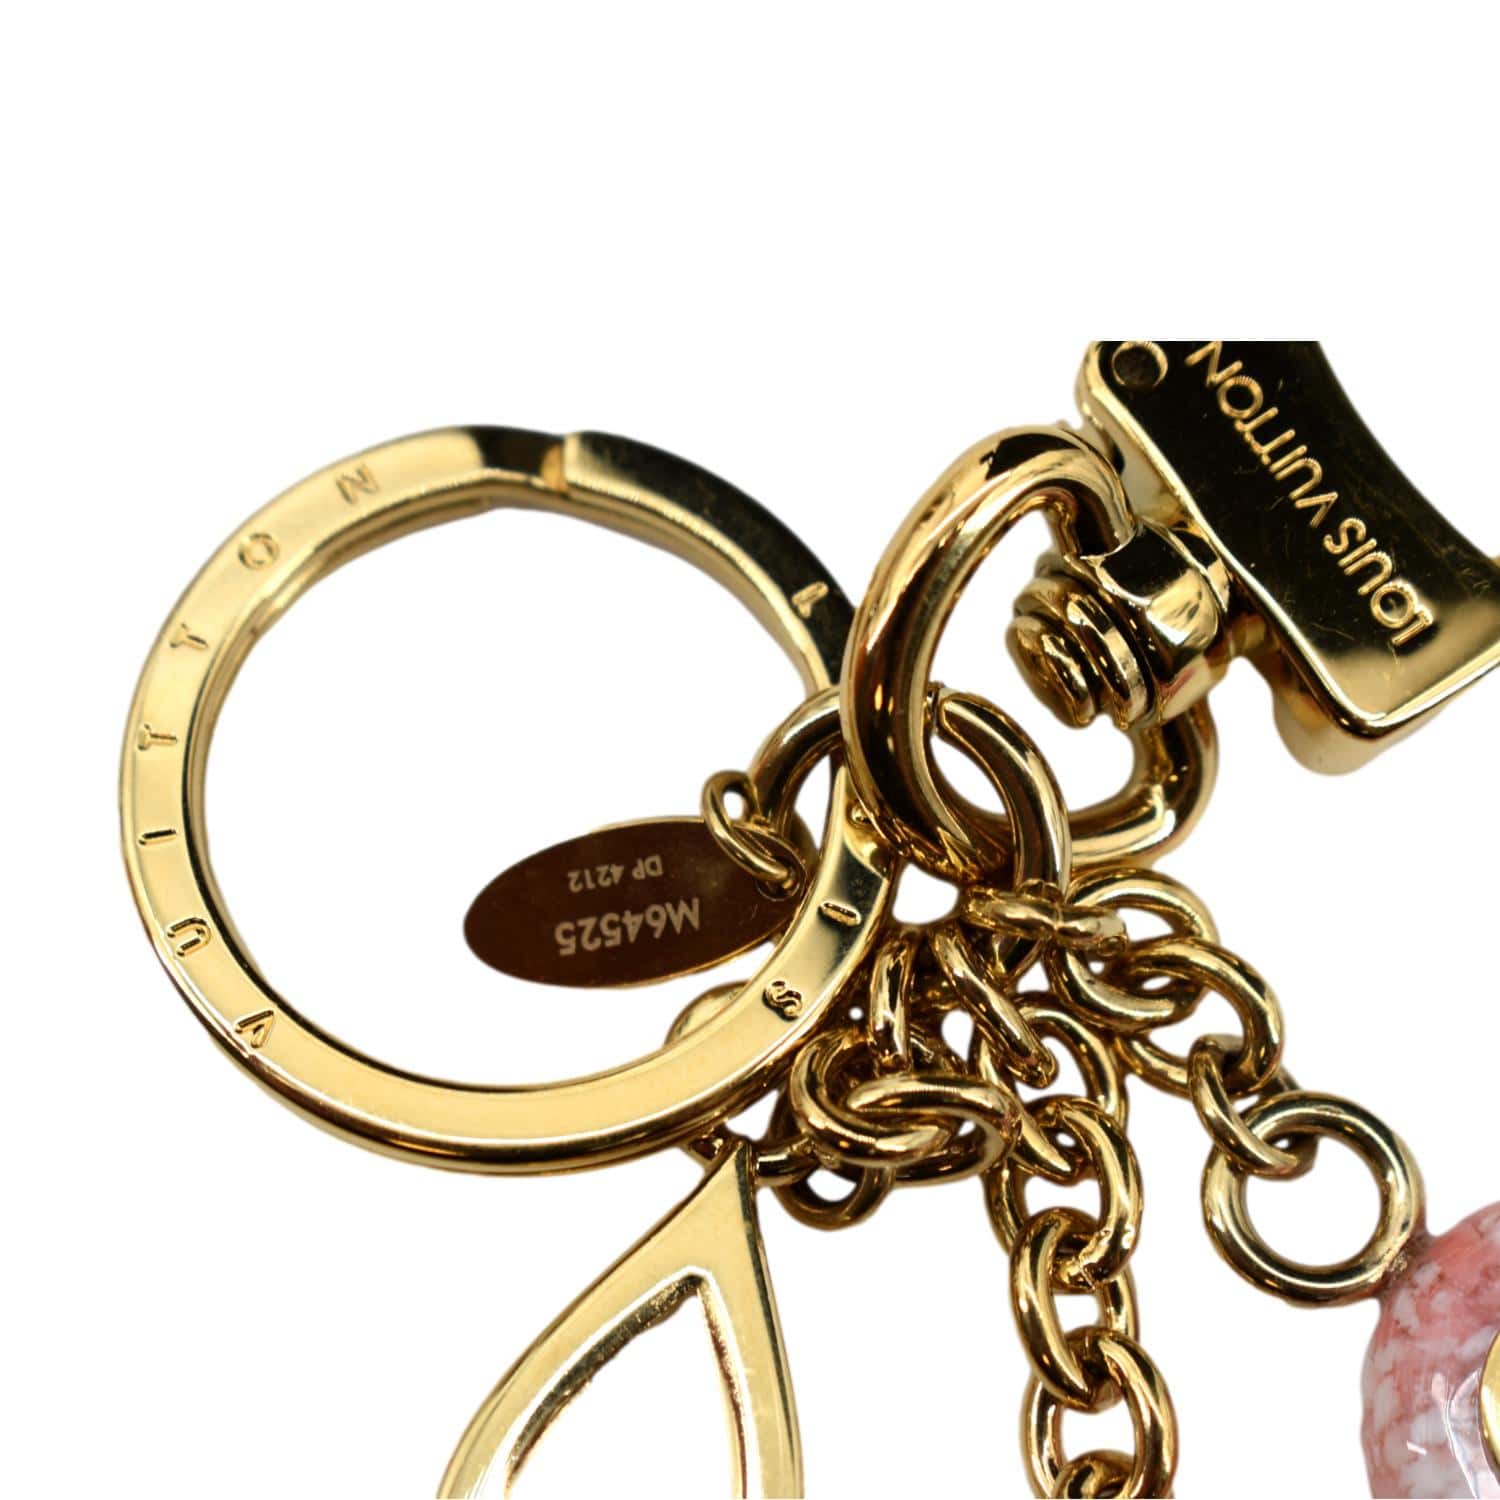 louis vuitton m64525 colorline bag charm key holder